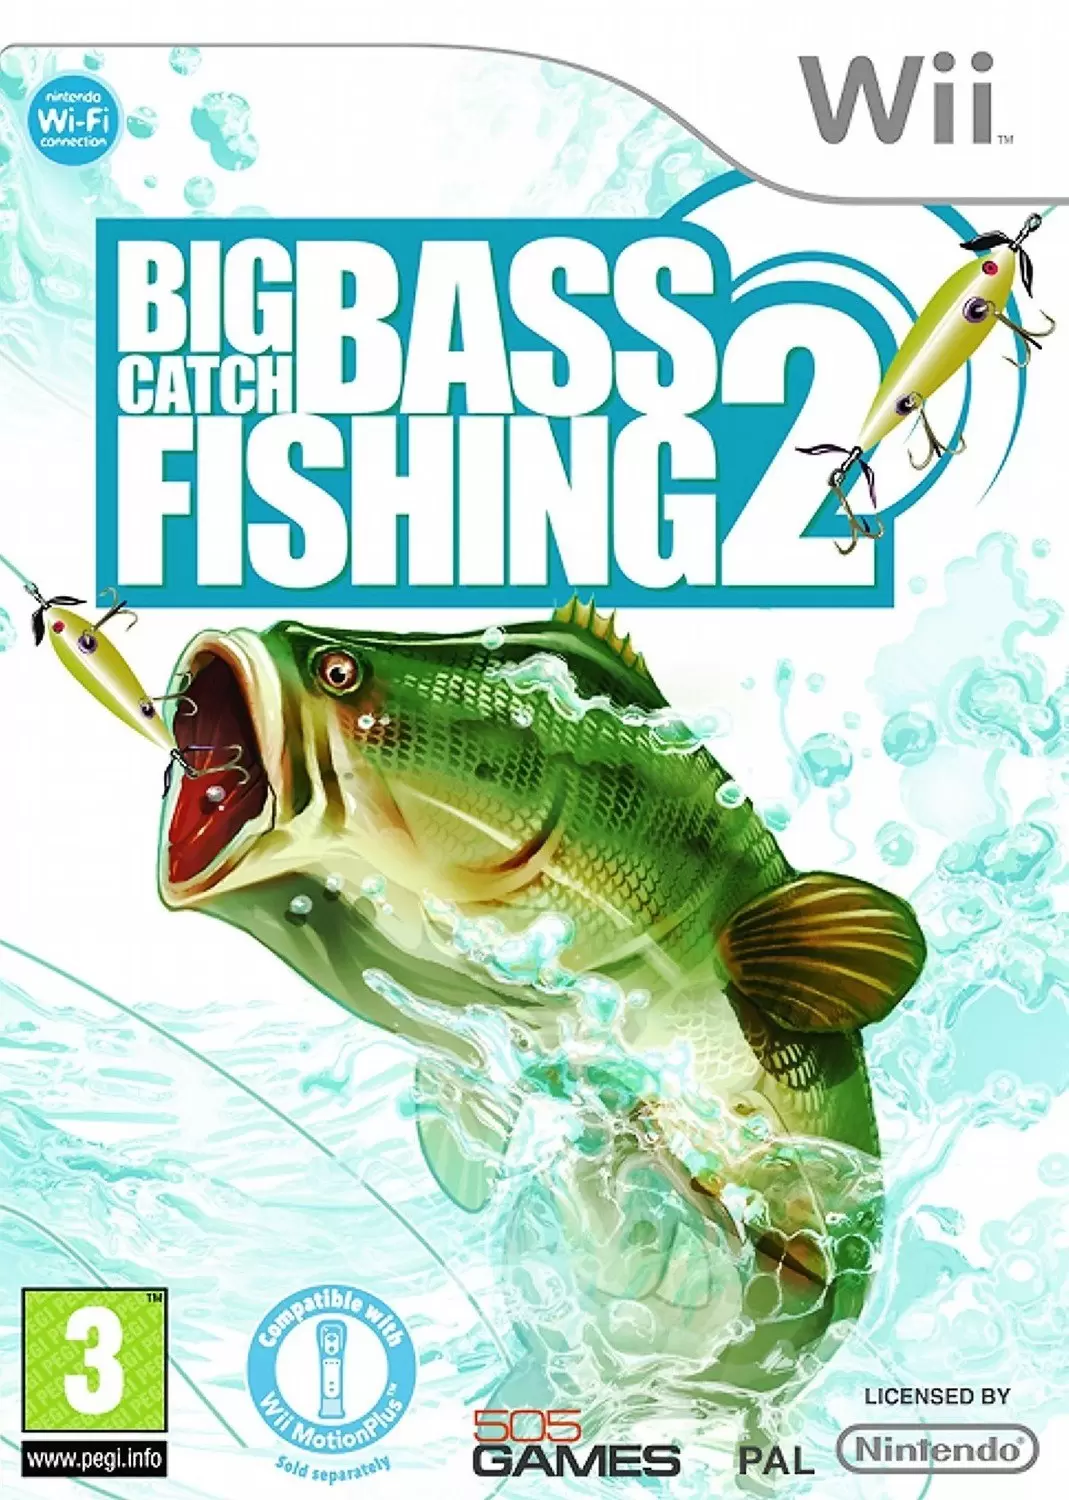 Nintendo Wii Games - Big Catch Bass Fishing 2